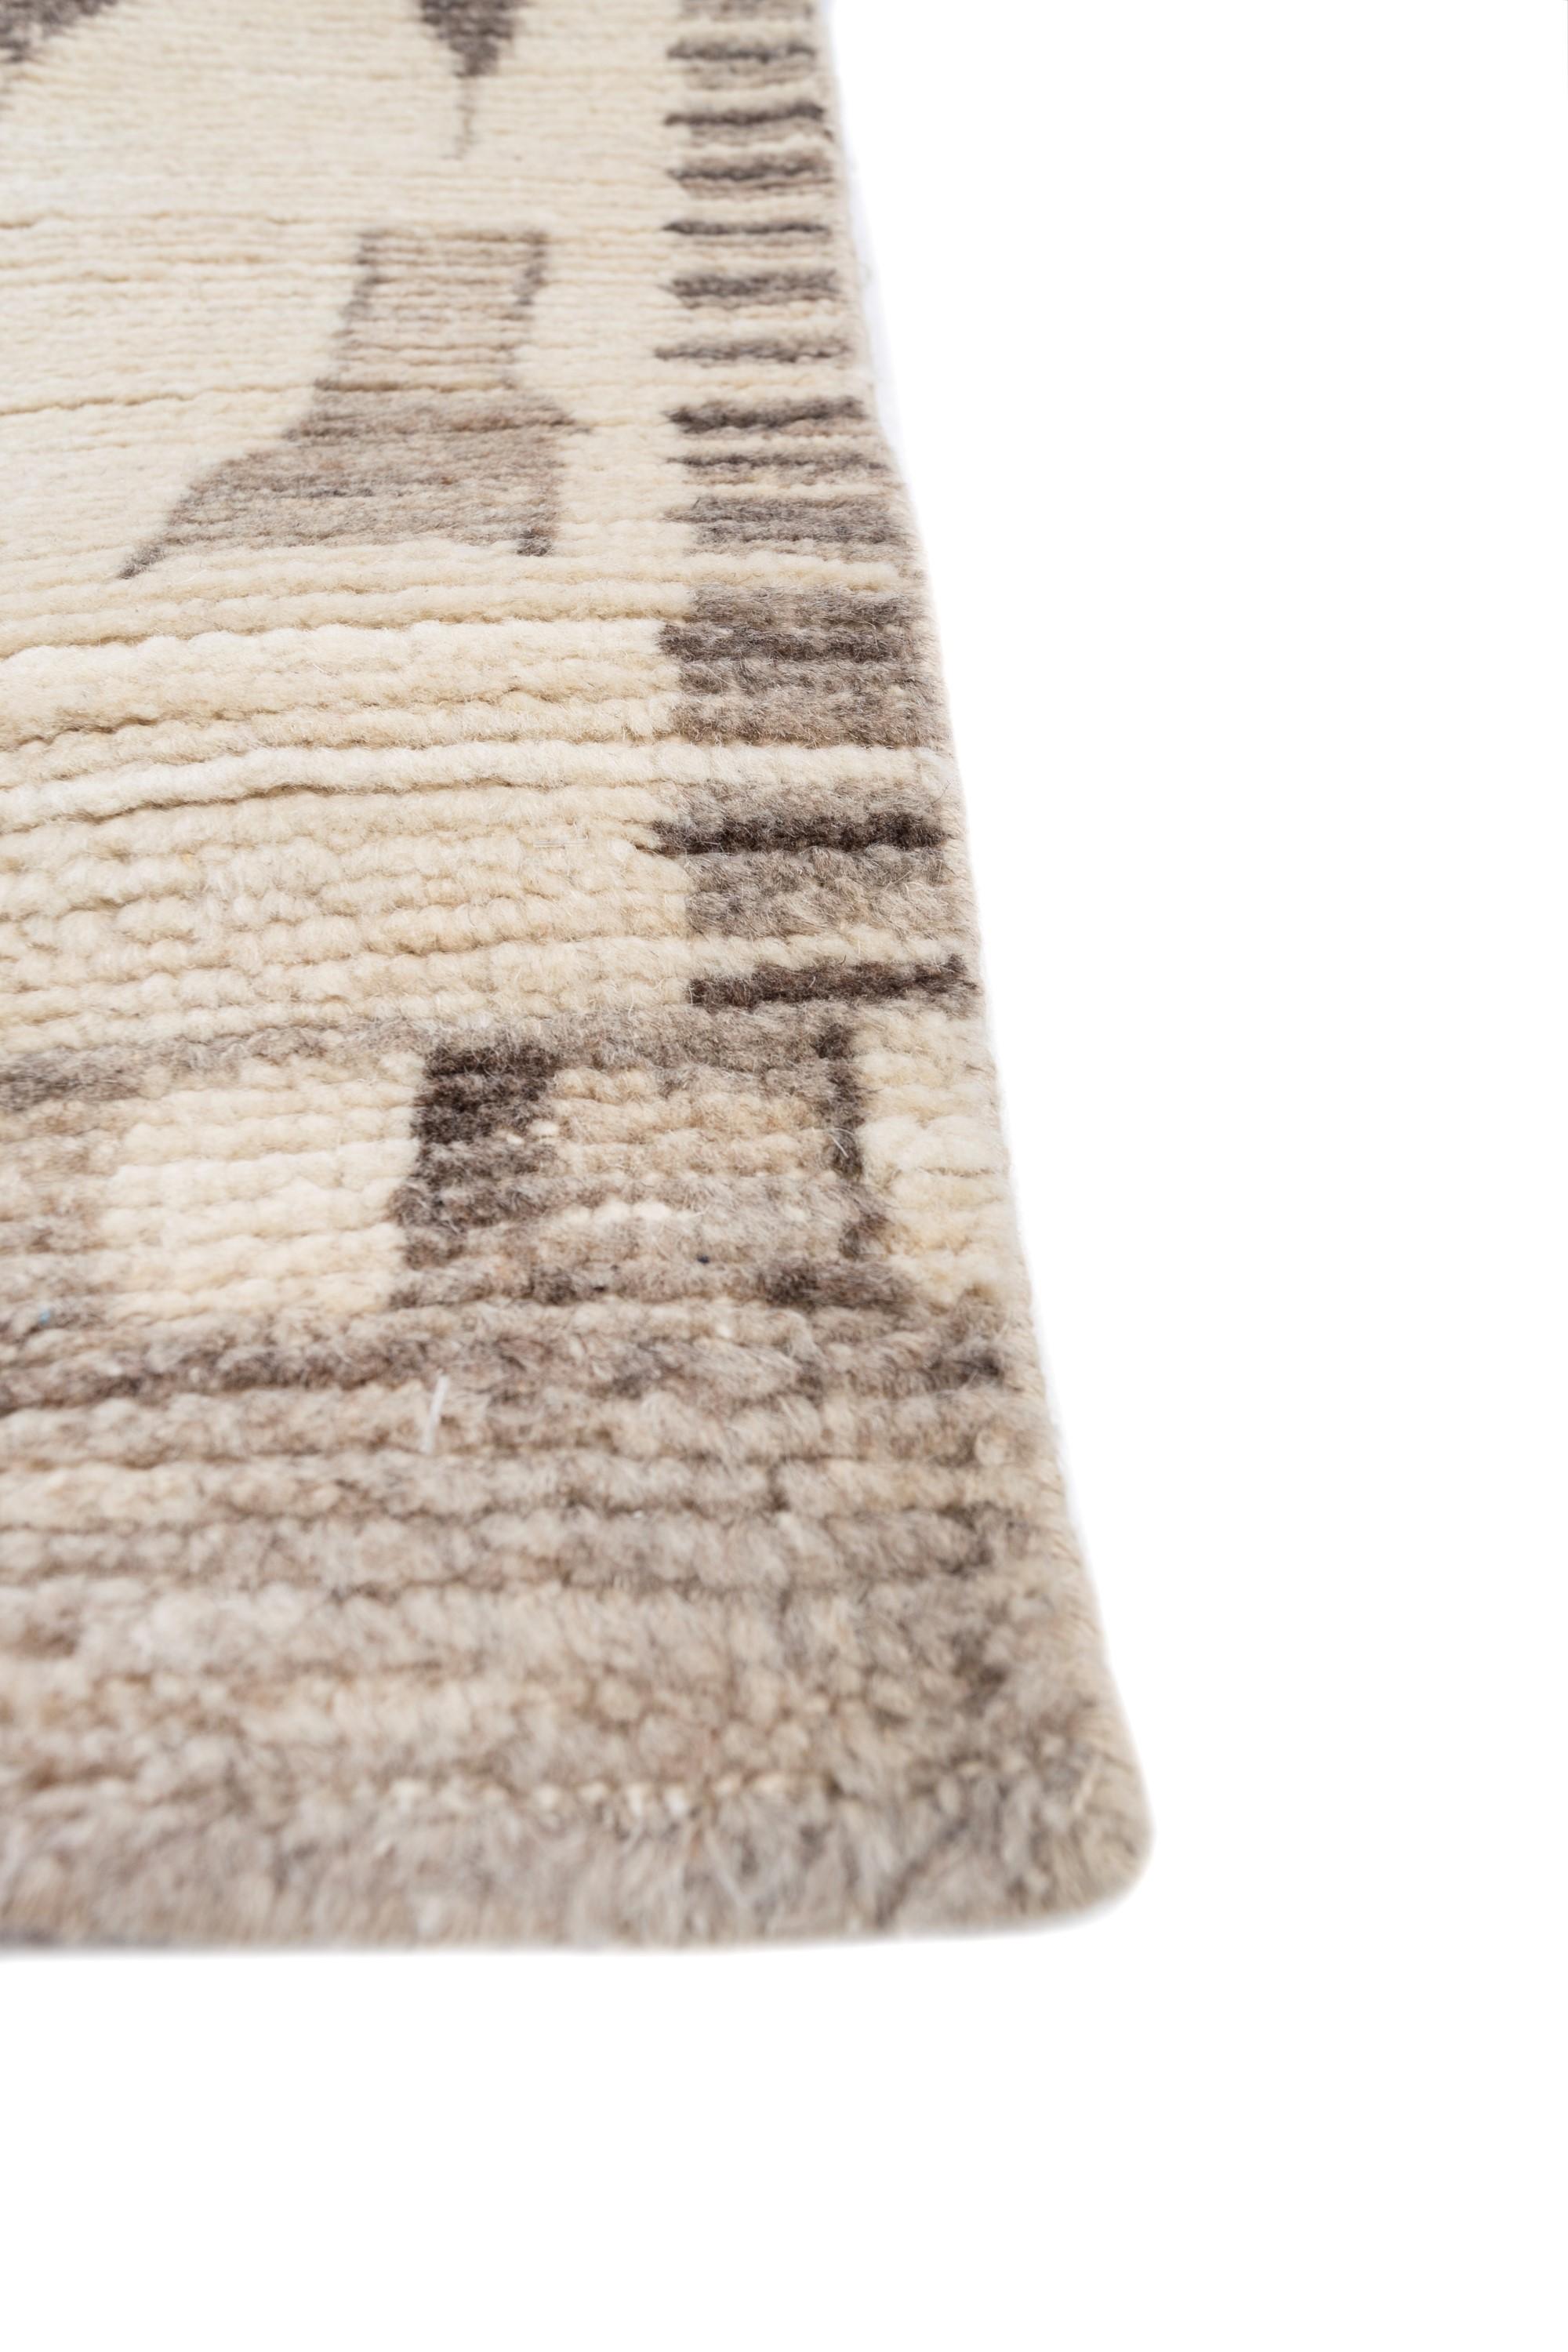 Dieser luxuriöse Teppich aus unserer Manifest Collection ist nicht nur ein Bodenbelag, sondern eine Leinwand, die eine Geschichte von raffinierter Ästhetik und unvergleichlicher Handwerkskunst erzählt. Das einzigartige Muster dieses Teppichs ist